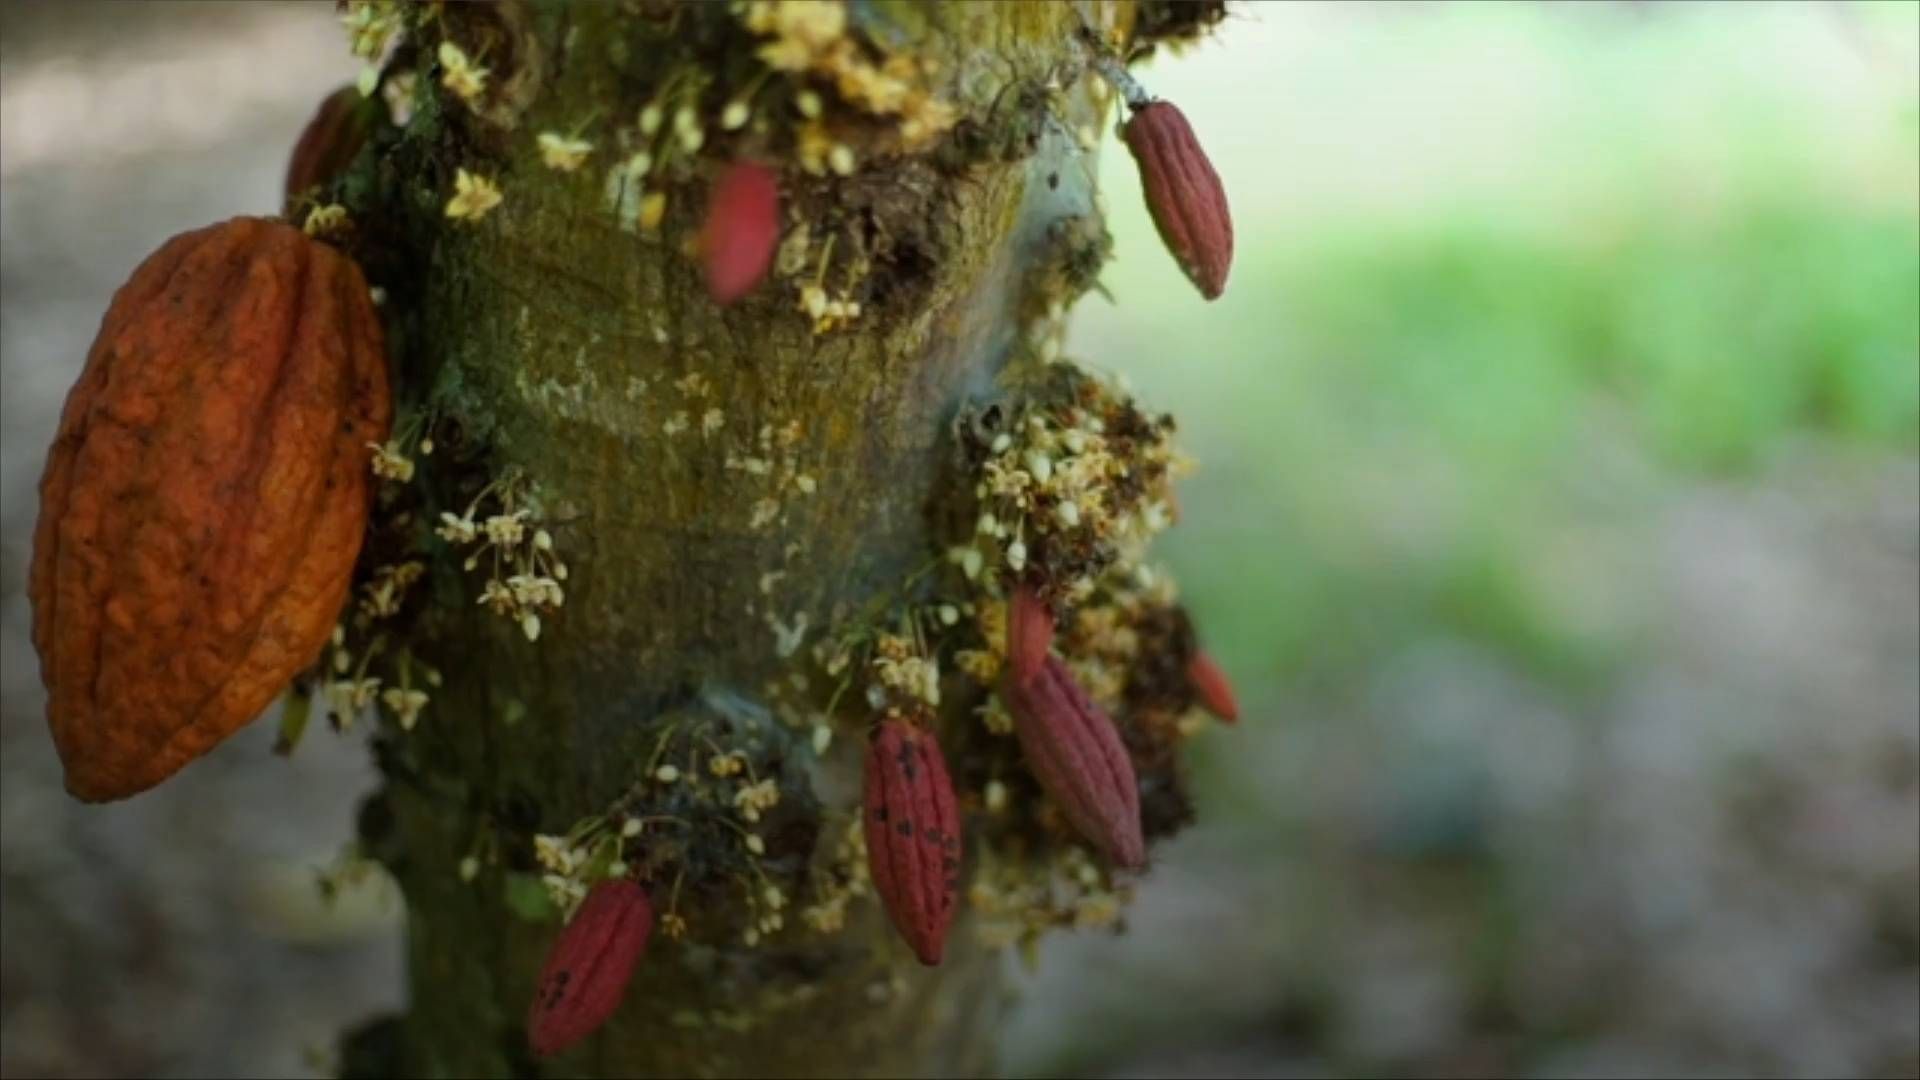 Schoko-Krise: Virus tötet Kakaobäume und könnte für Schokoaldenknappheit sorgen